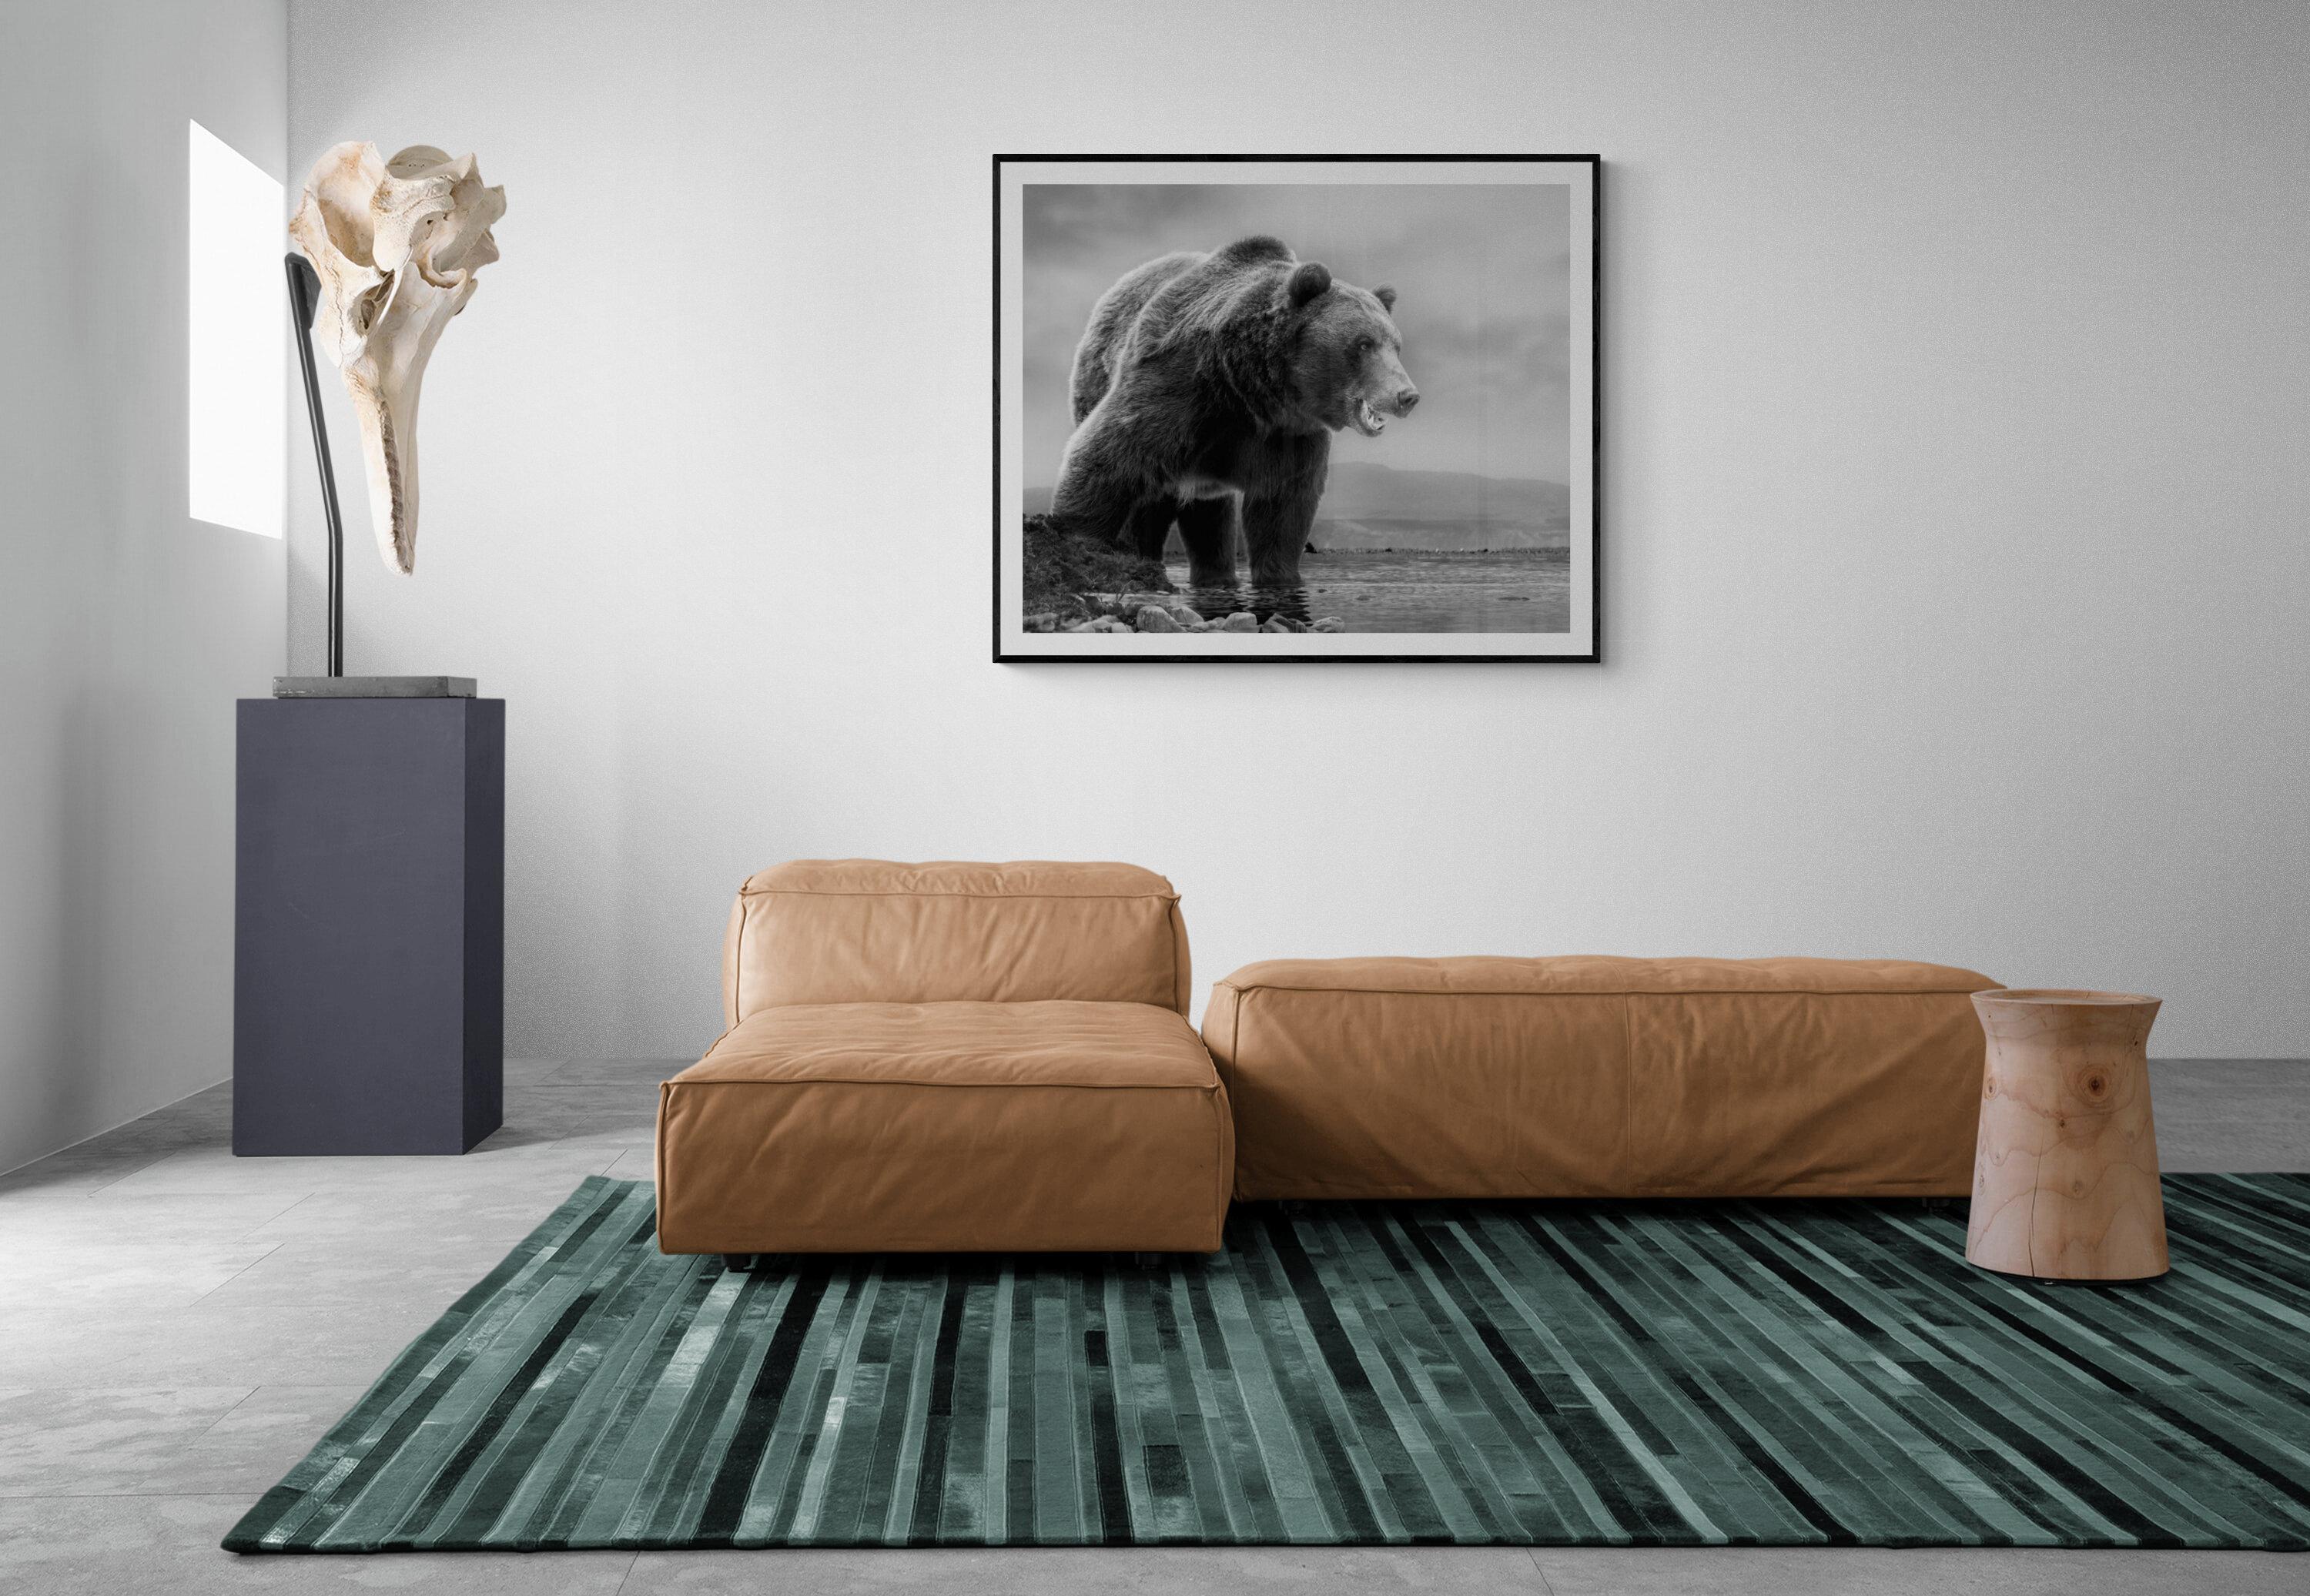 Dies ist eine zeitgenössische Fotografie eines Kodiakbären.  
Dies wurde 2019 auf Kodiak Island gedreht.
Auflage von 50 Stück
Signiert und nummeriert von Shane Russeck 
Archivalisches Pigmentpapier
Einrahmung verfügbar. Erkundigen Sie sich nach den